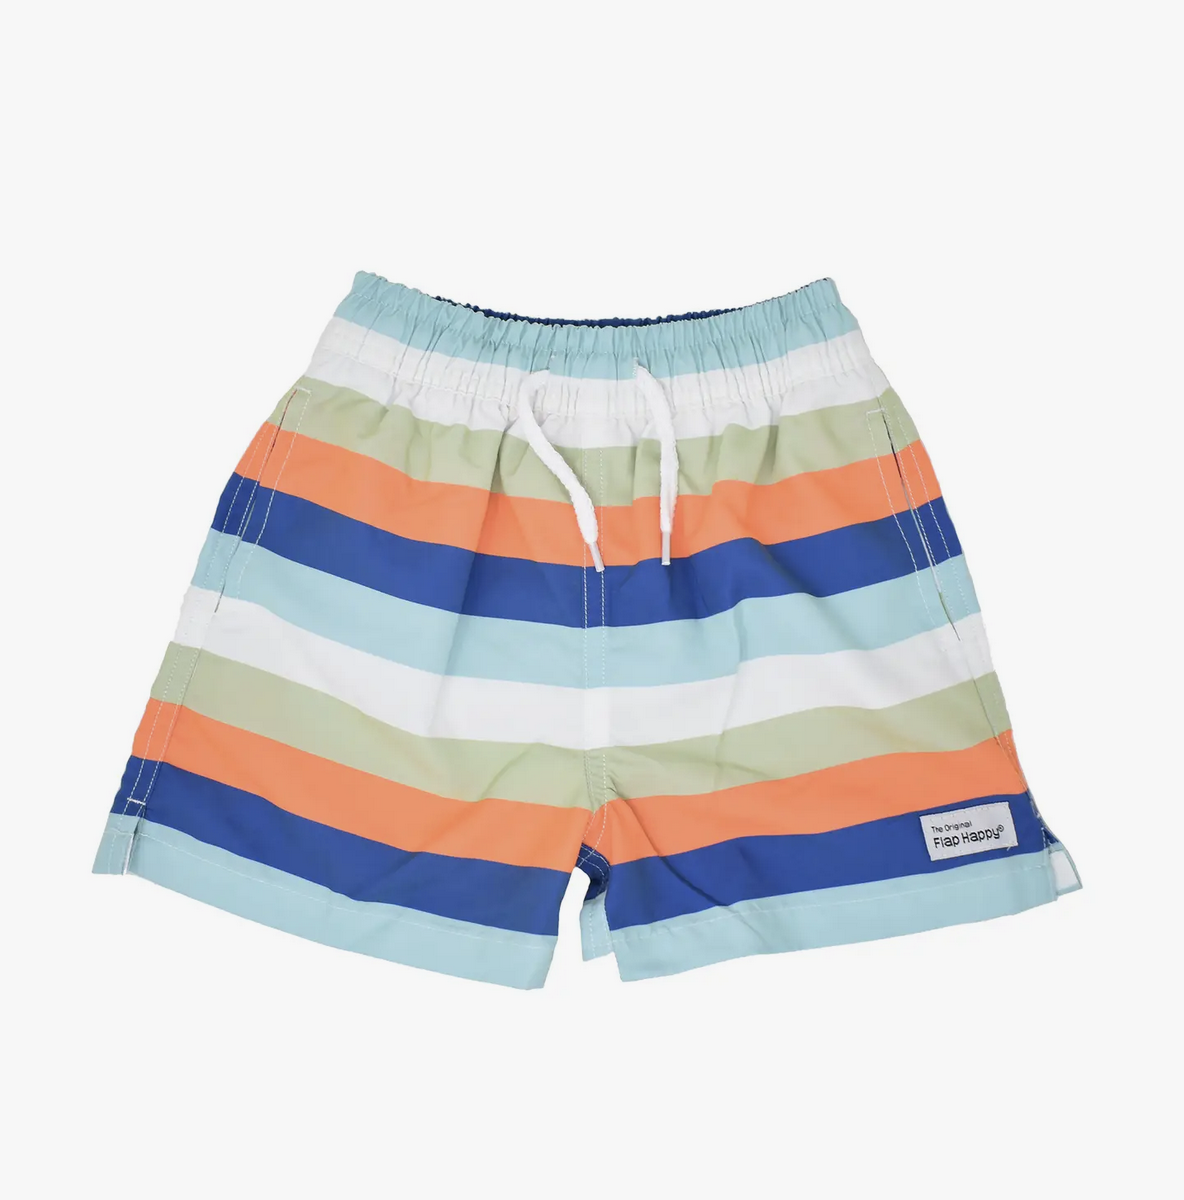 flap happy UPF50+ swim trunks